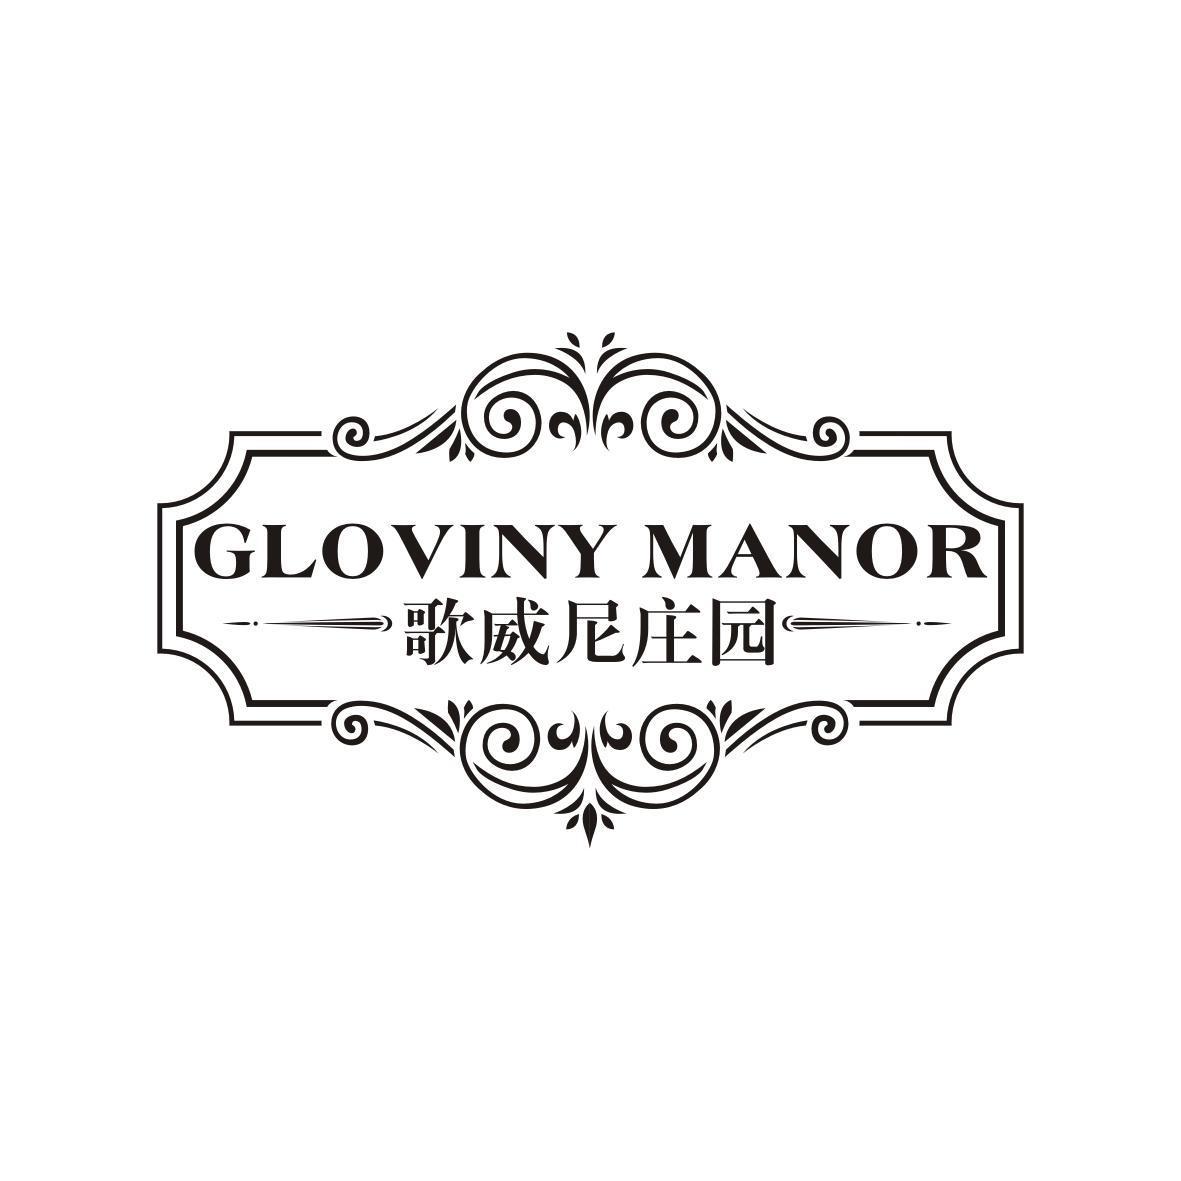 歌威尼庄园 GLOVINY MANOR